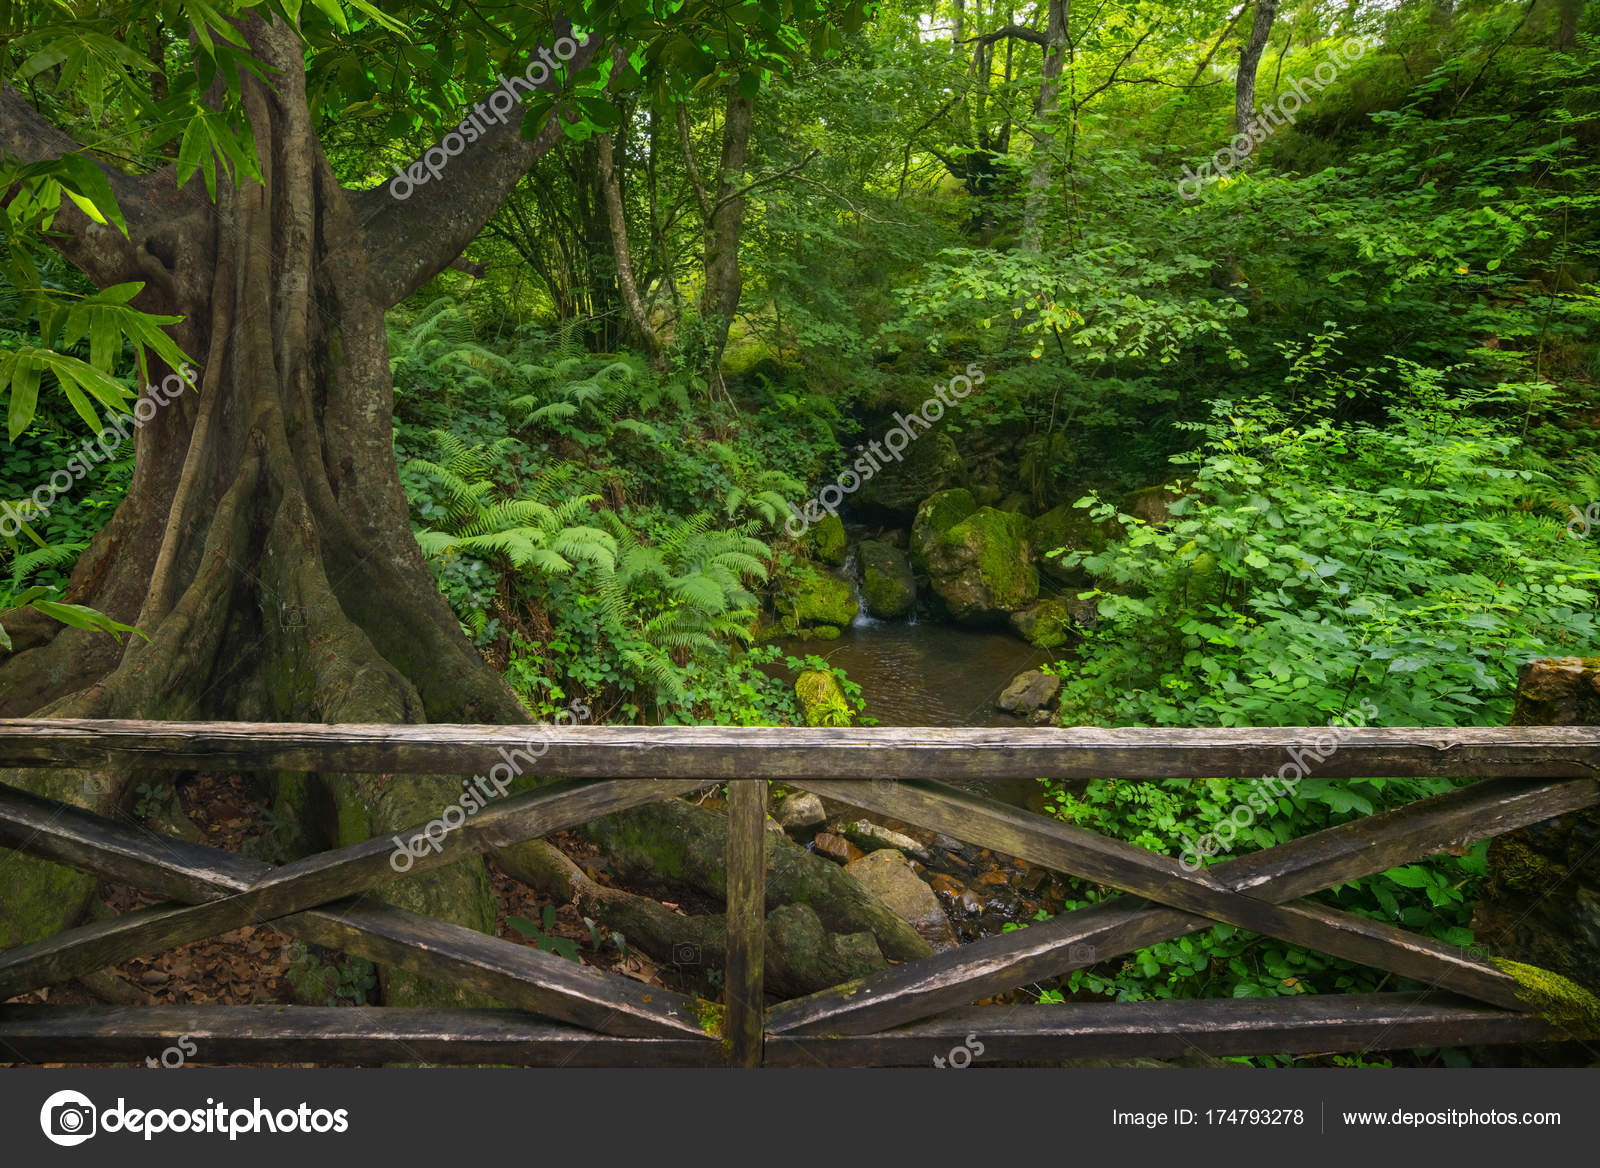 ジャングル写真素材 ロイヤリティフリージャングル画像 Depositphotos